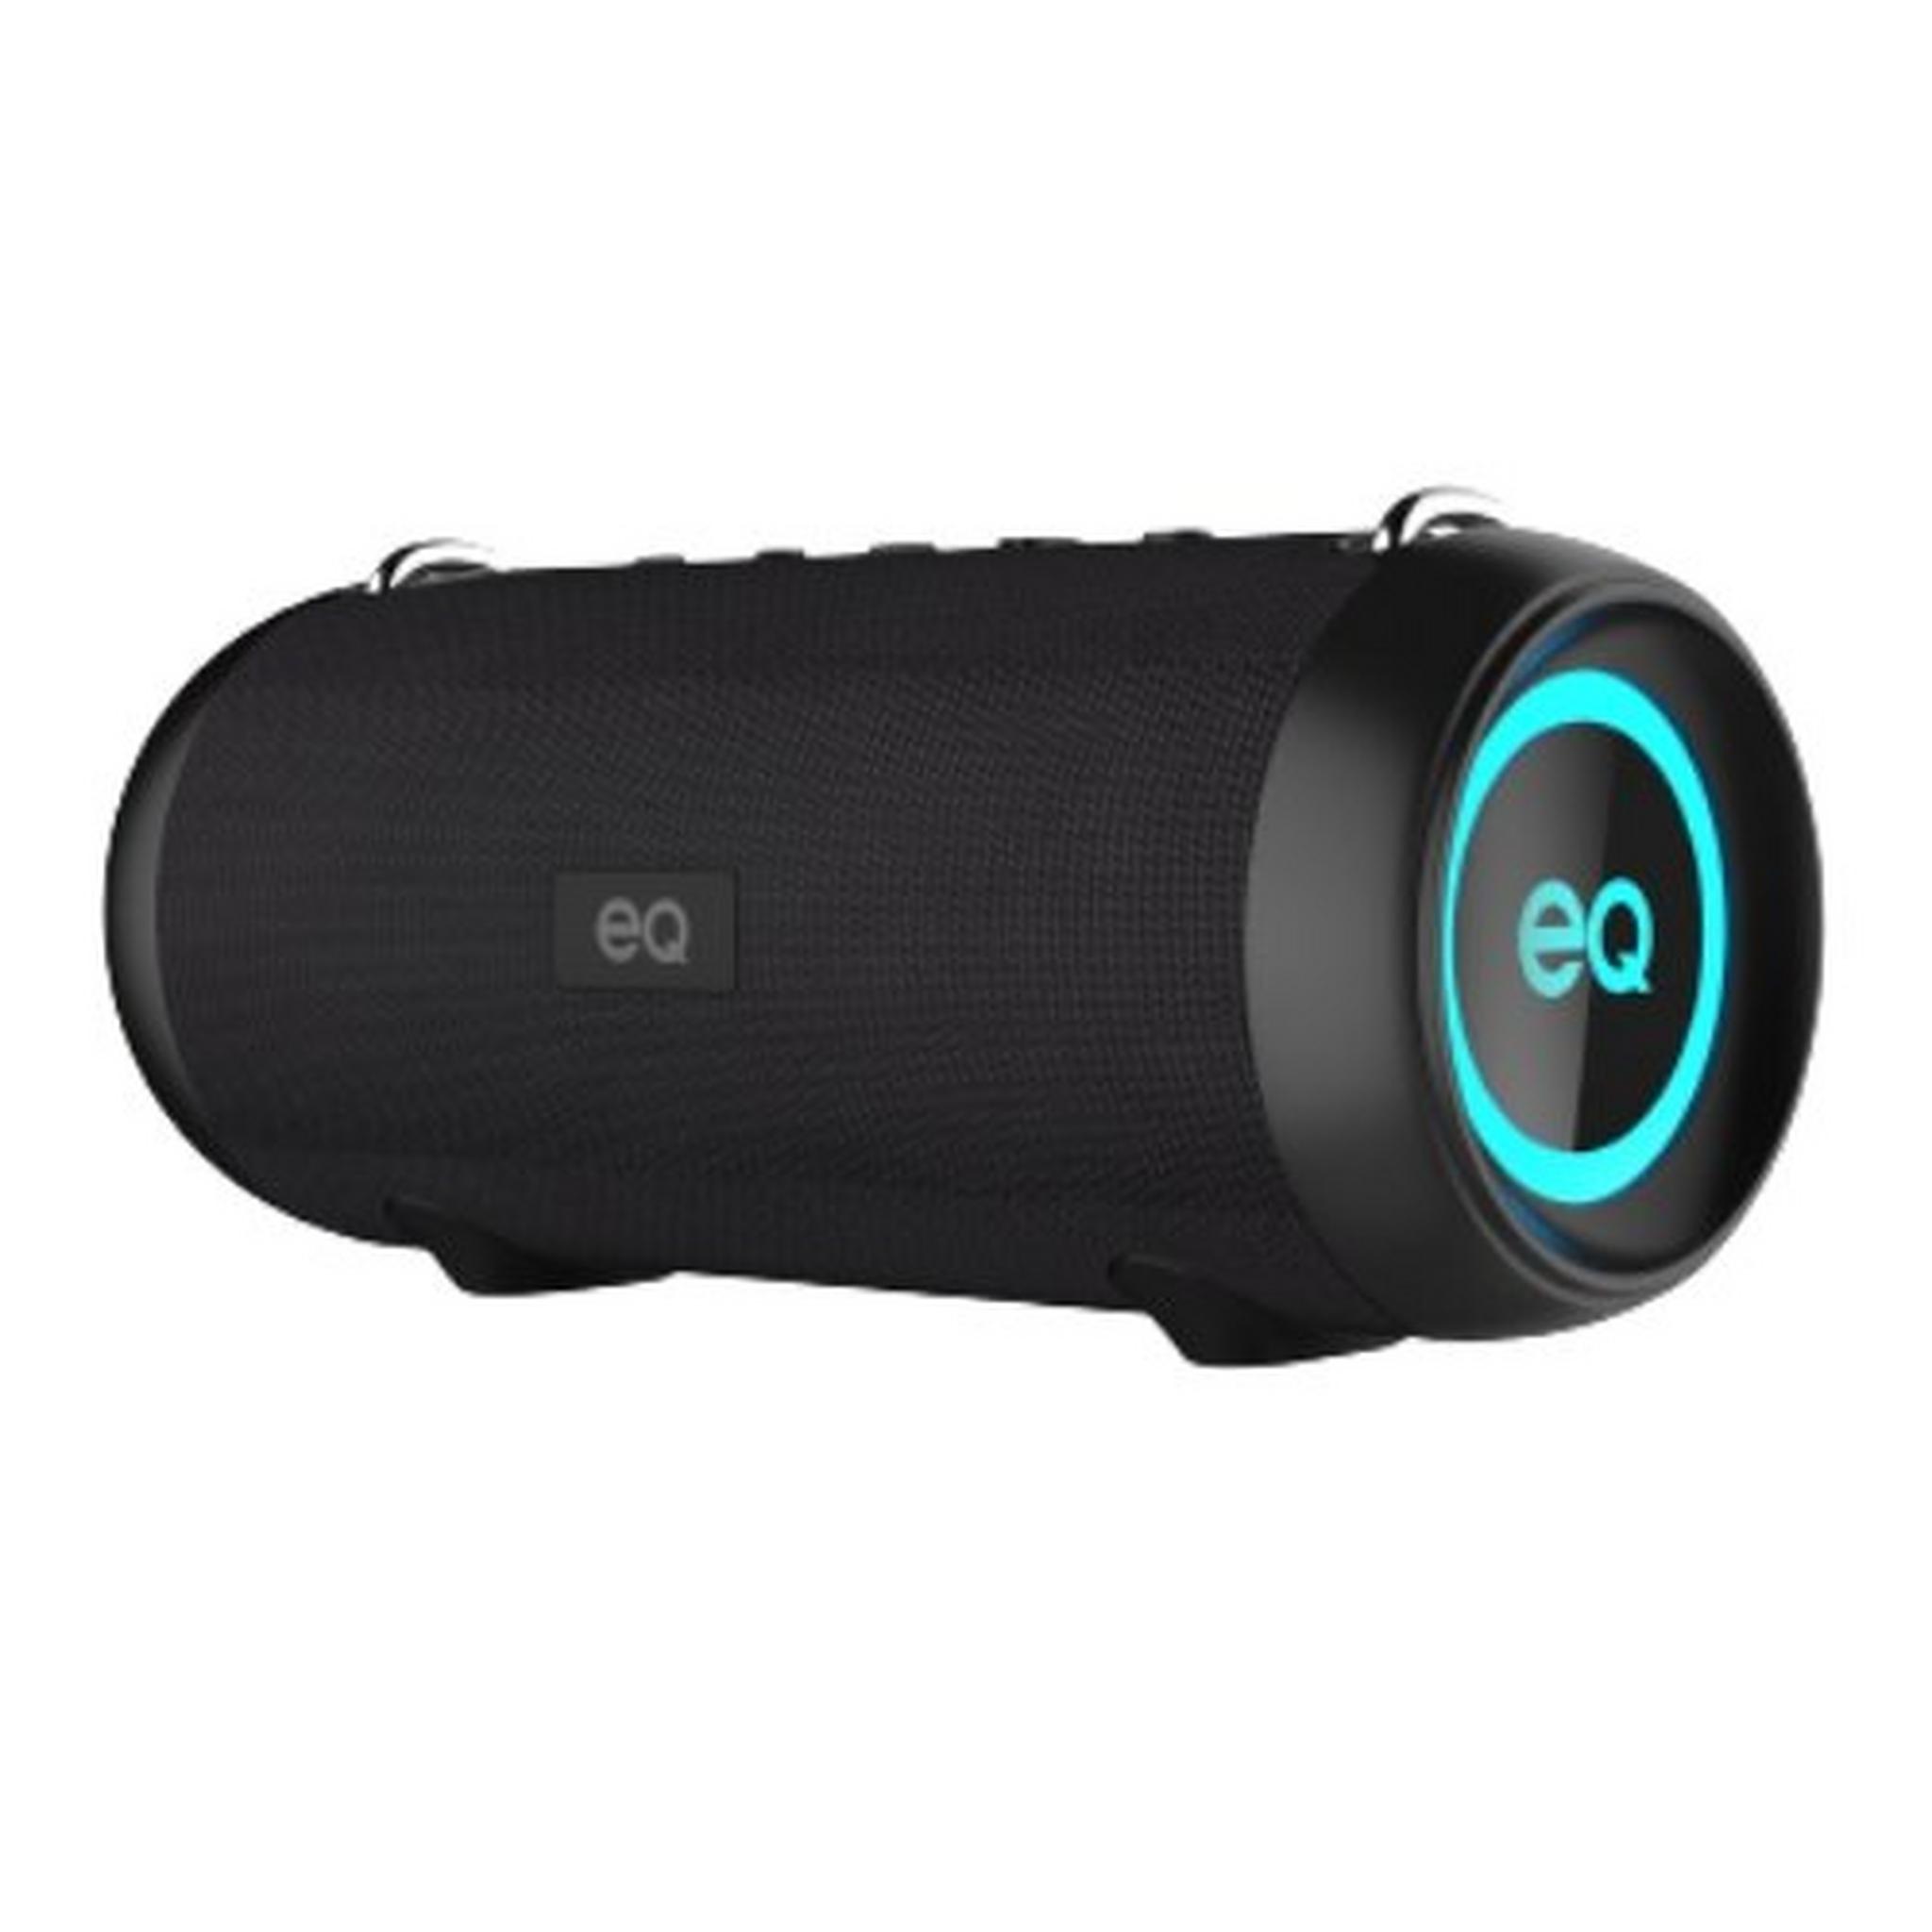 EQ Wireless Water-Proof Speaker (E9) - Black